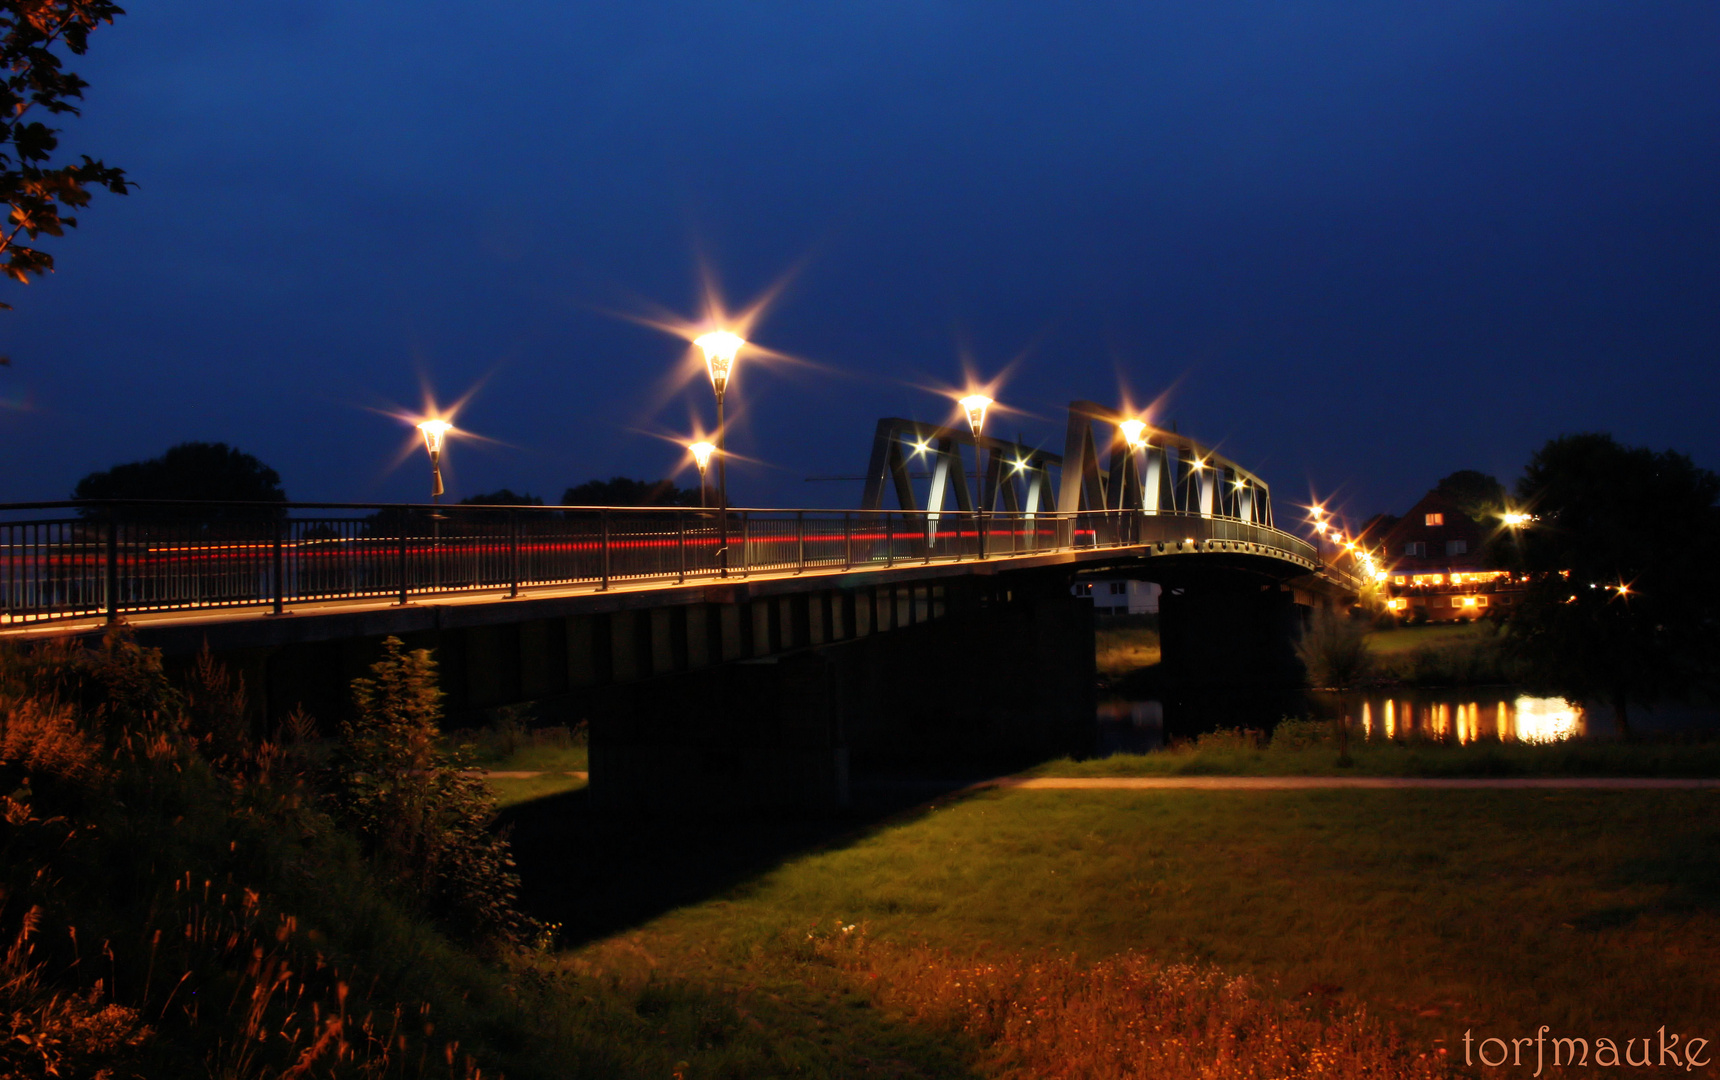 Emsbrücke bei Nacht - bridge over River Ems at night